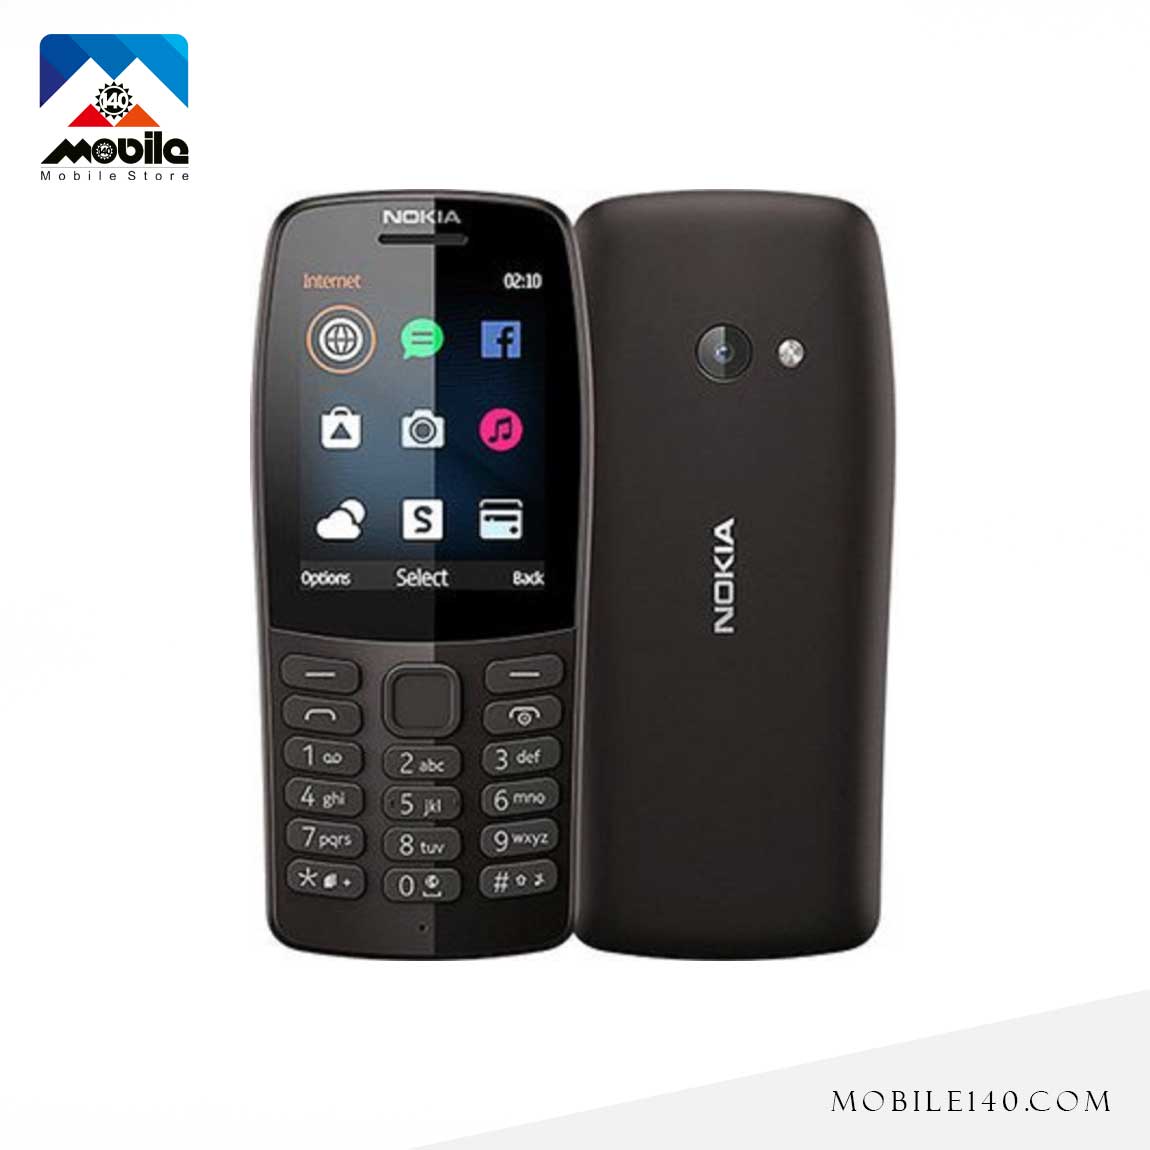 Nokia 210 2